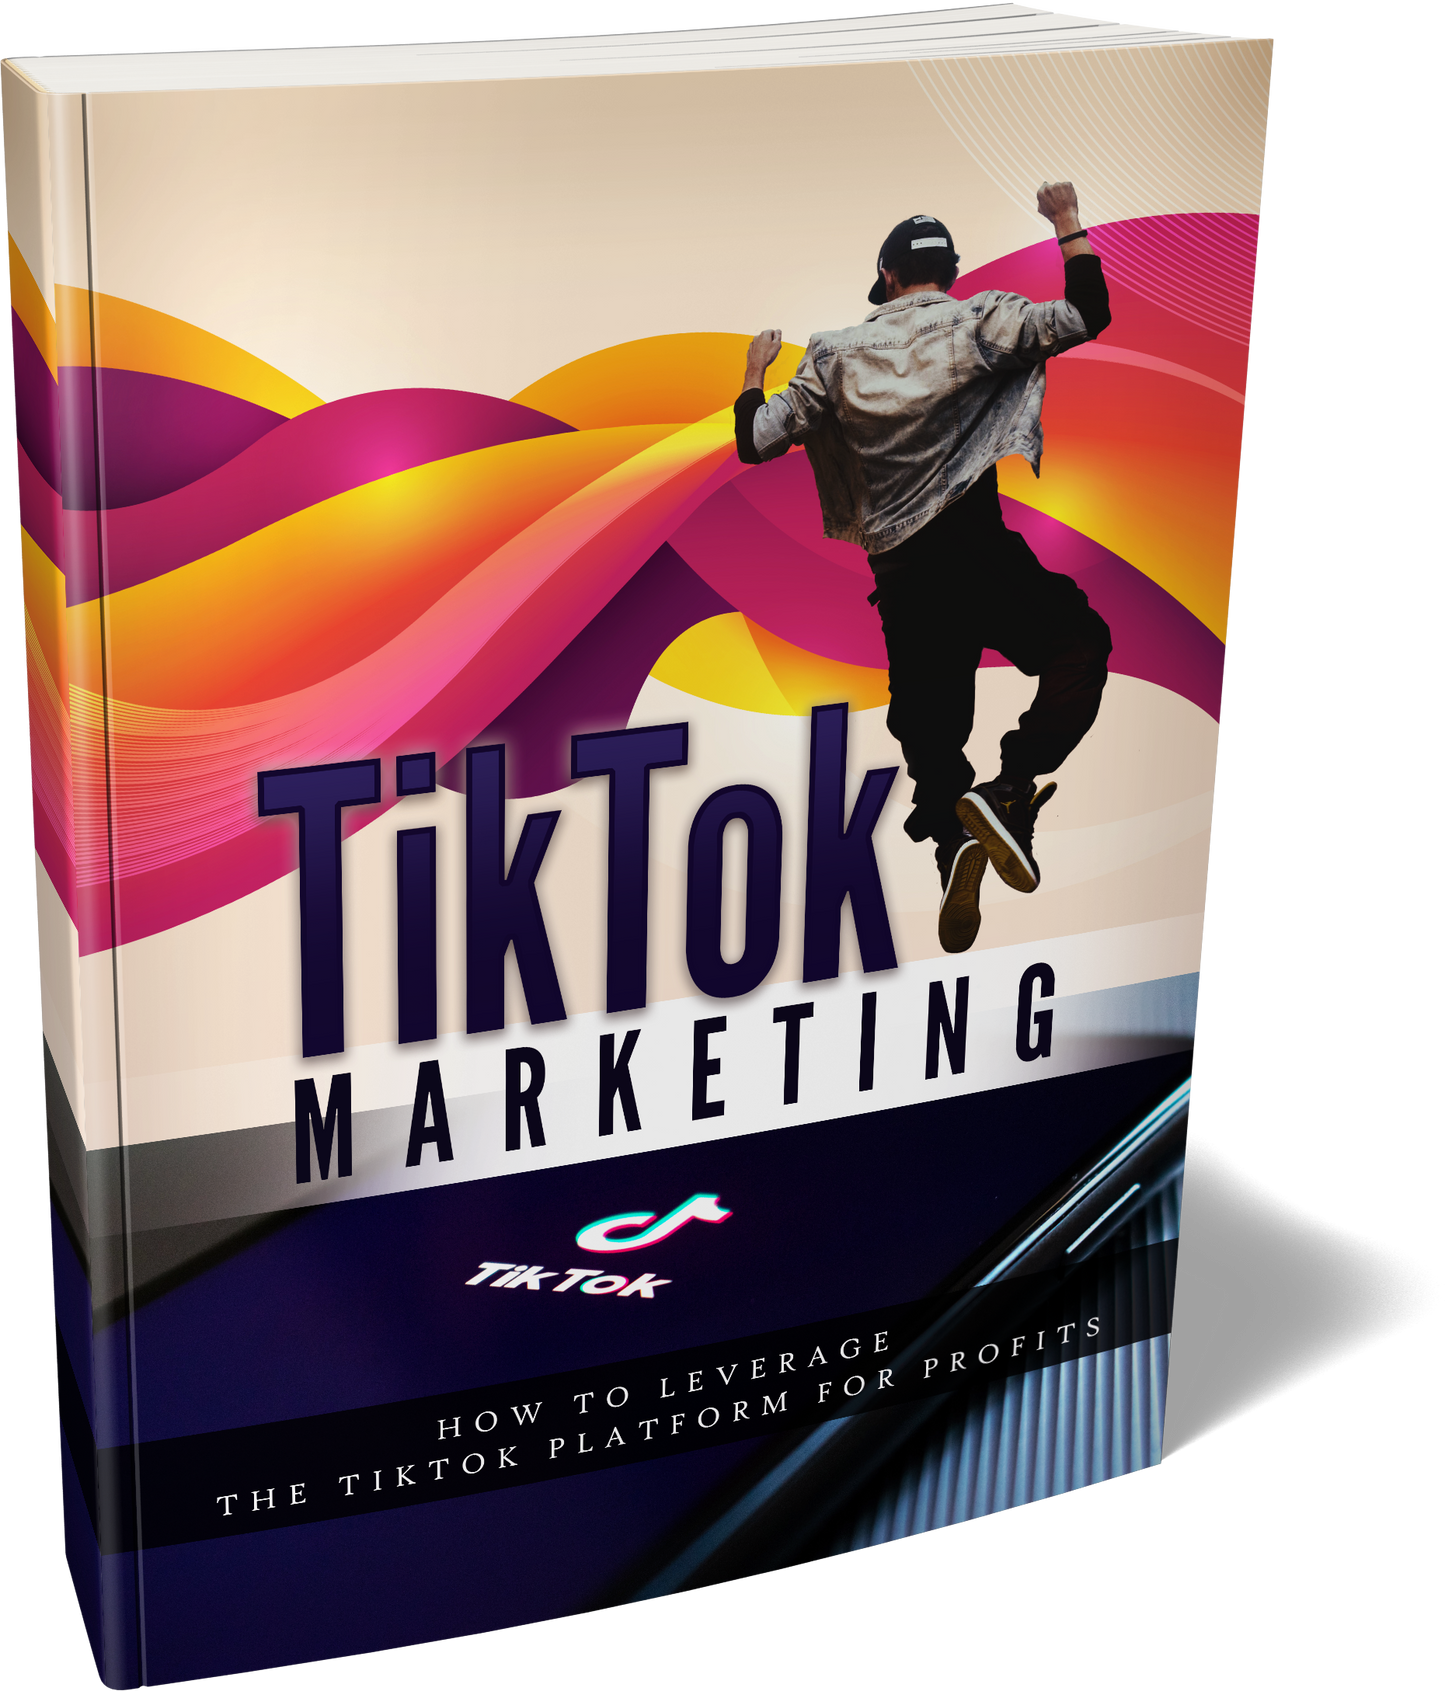 TikTok Marketing" E-BOOK